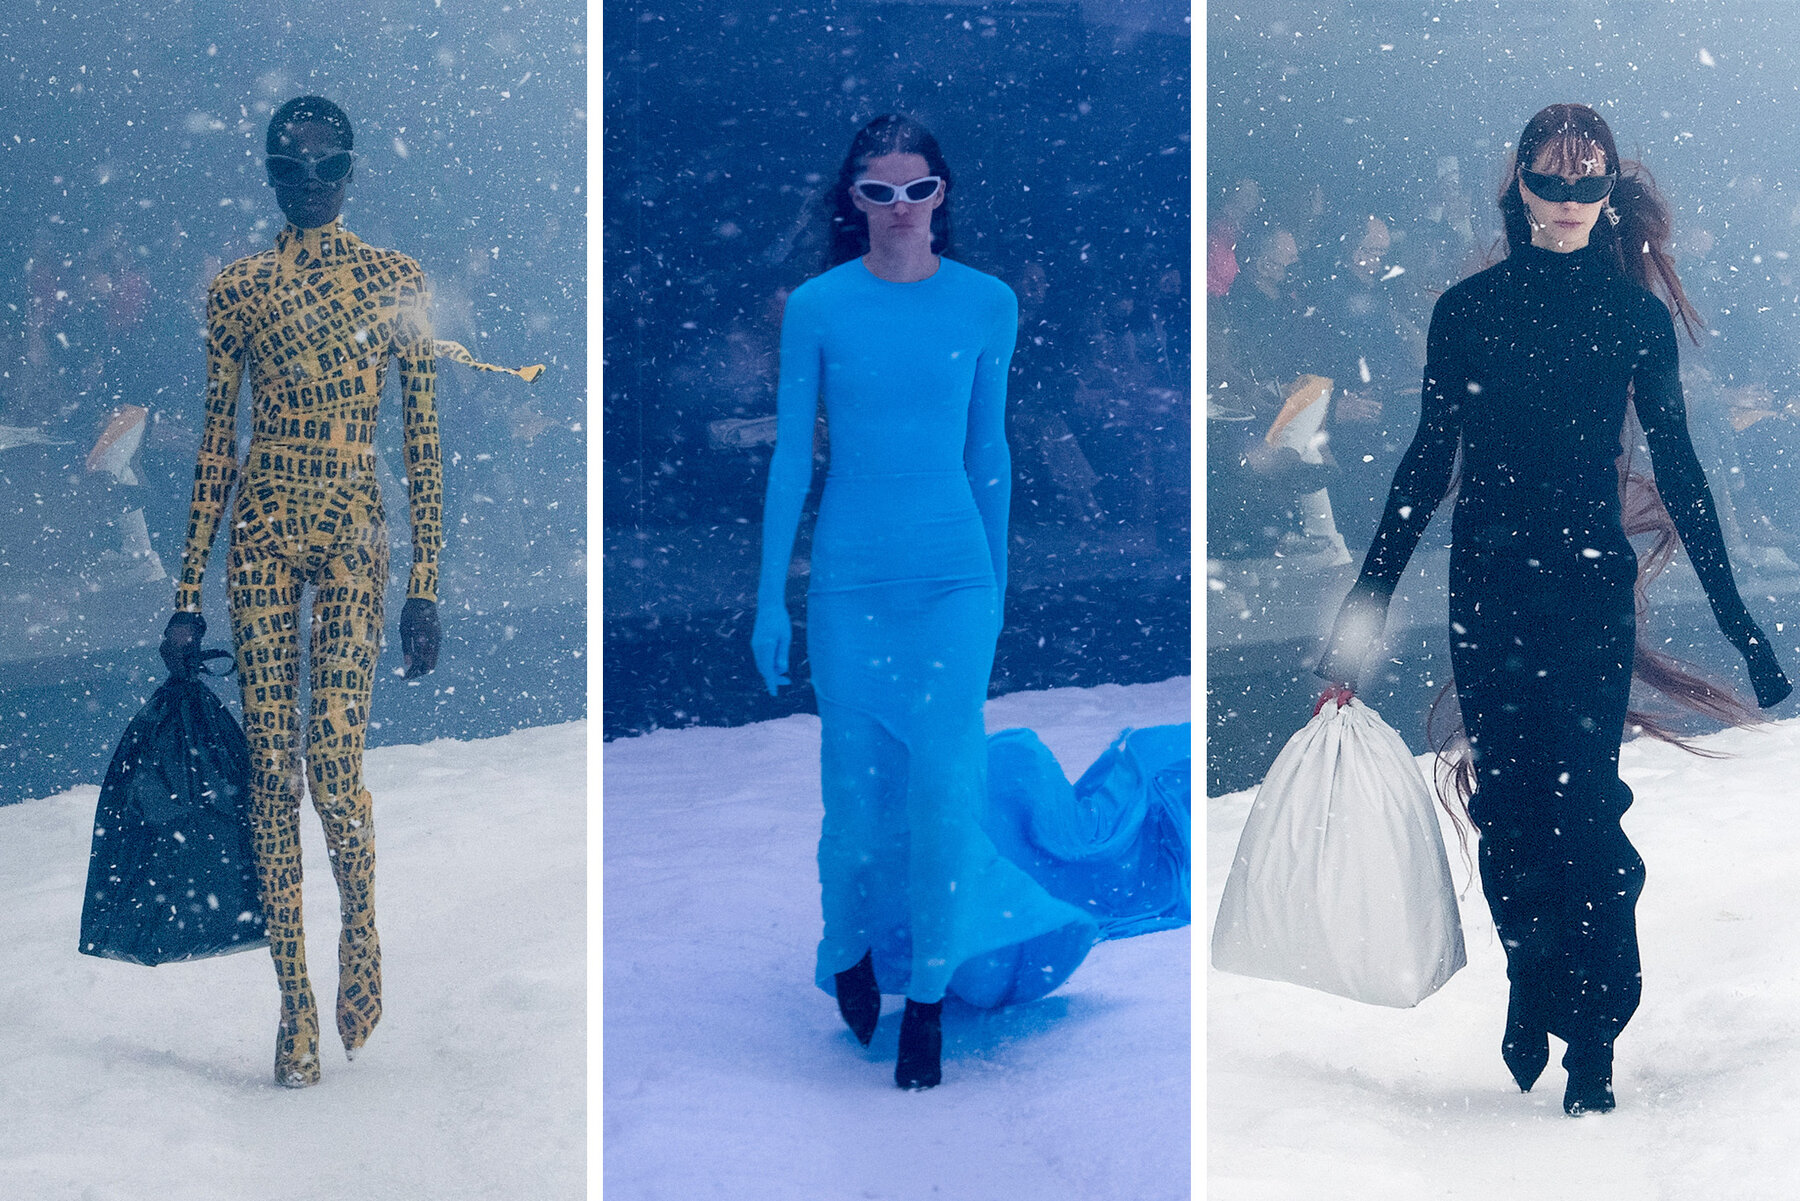 Balenciaga unveils its £650 'plastic bag' top on the catwalk